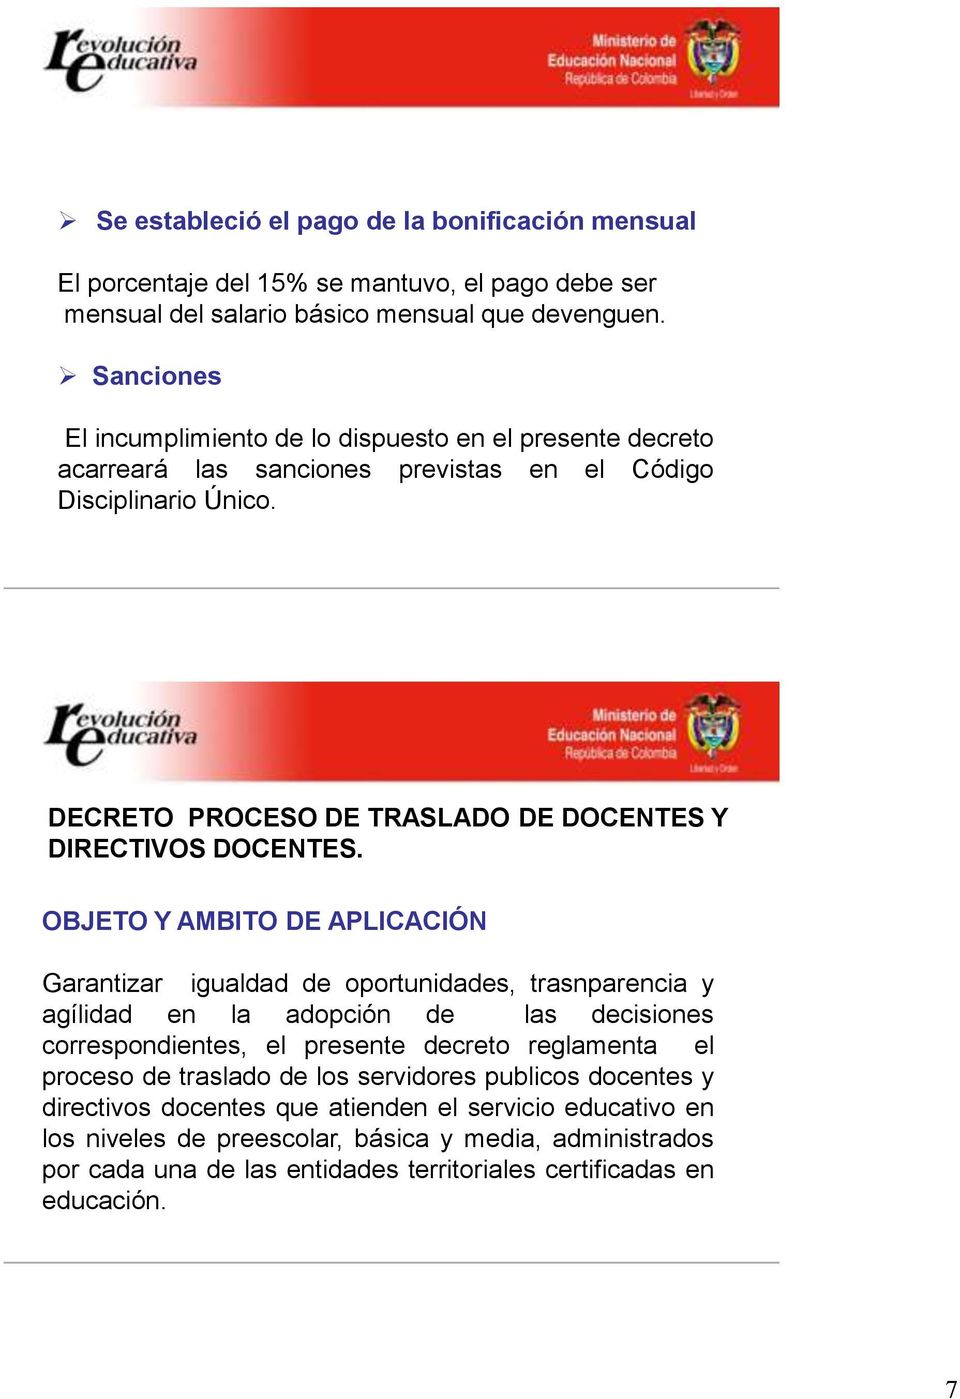 DECRETO PROCESO DE TRASLADO DE DOCENTES Y DIRECTIVOS DOCENTES.